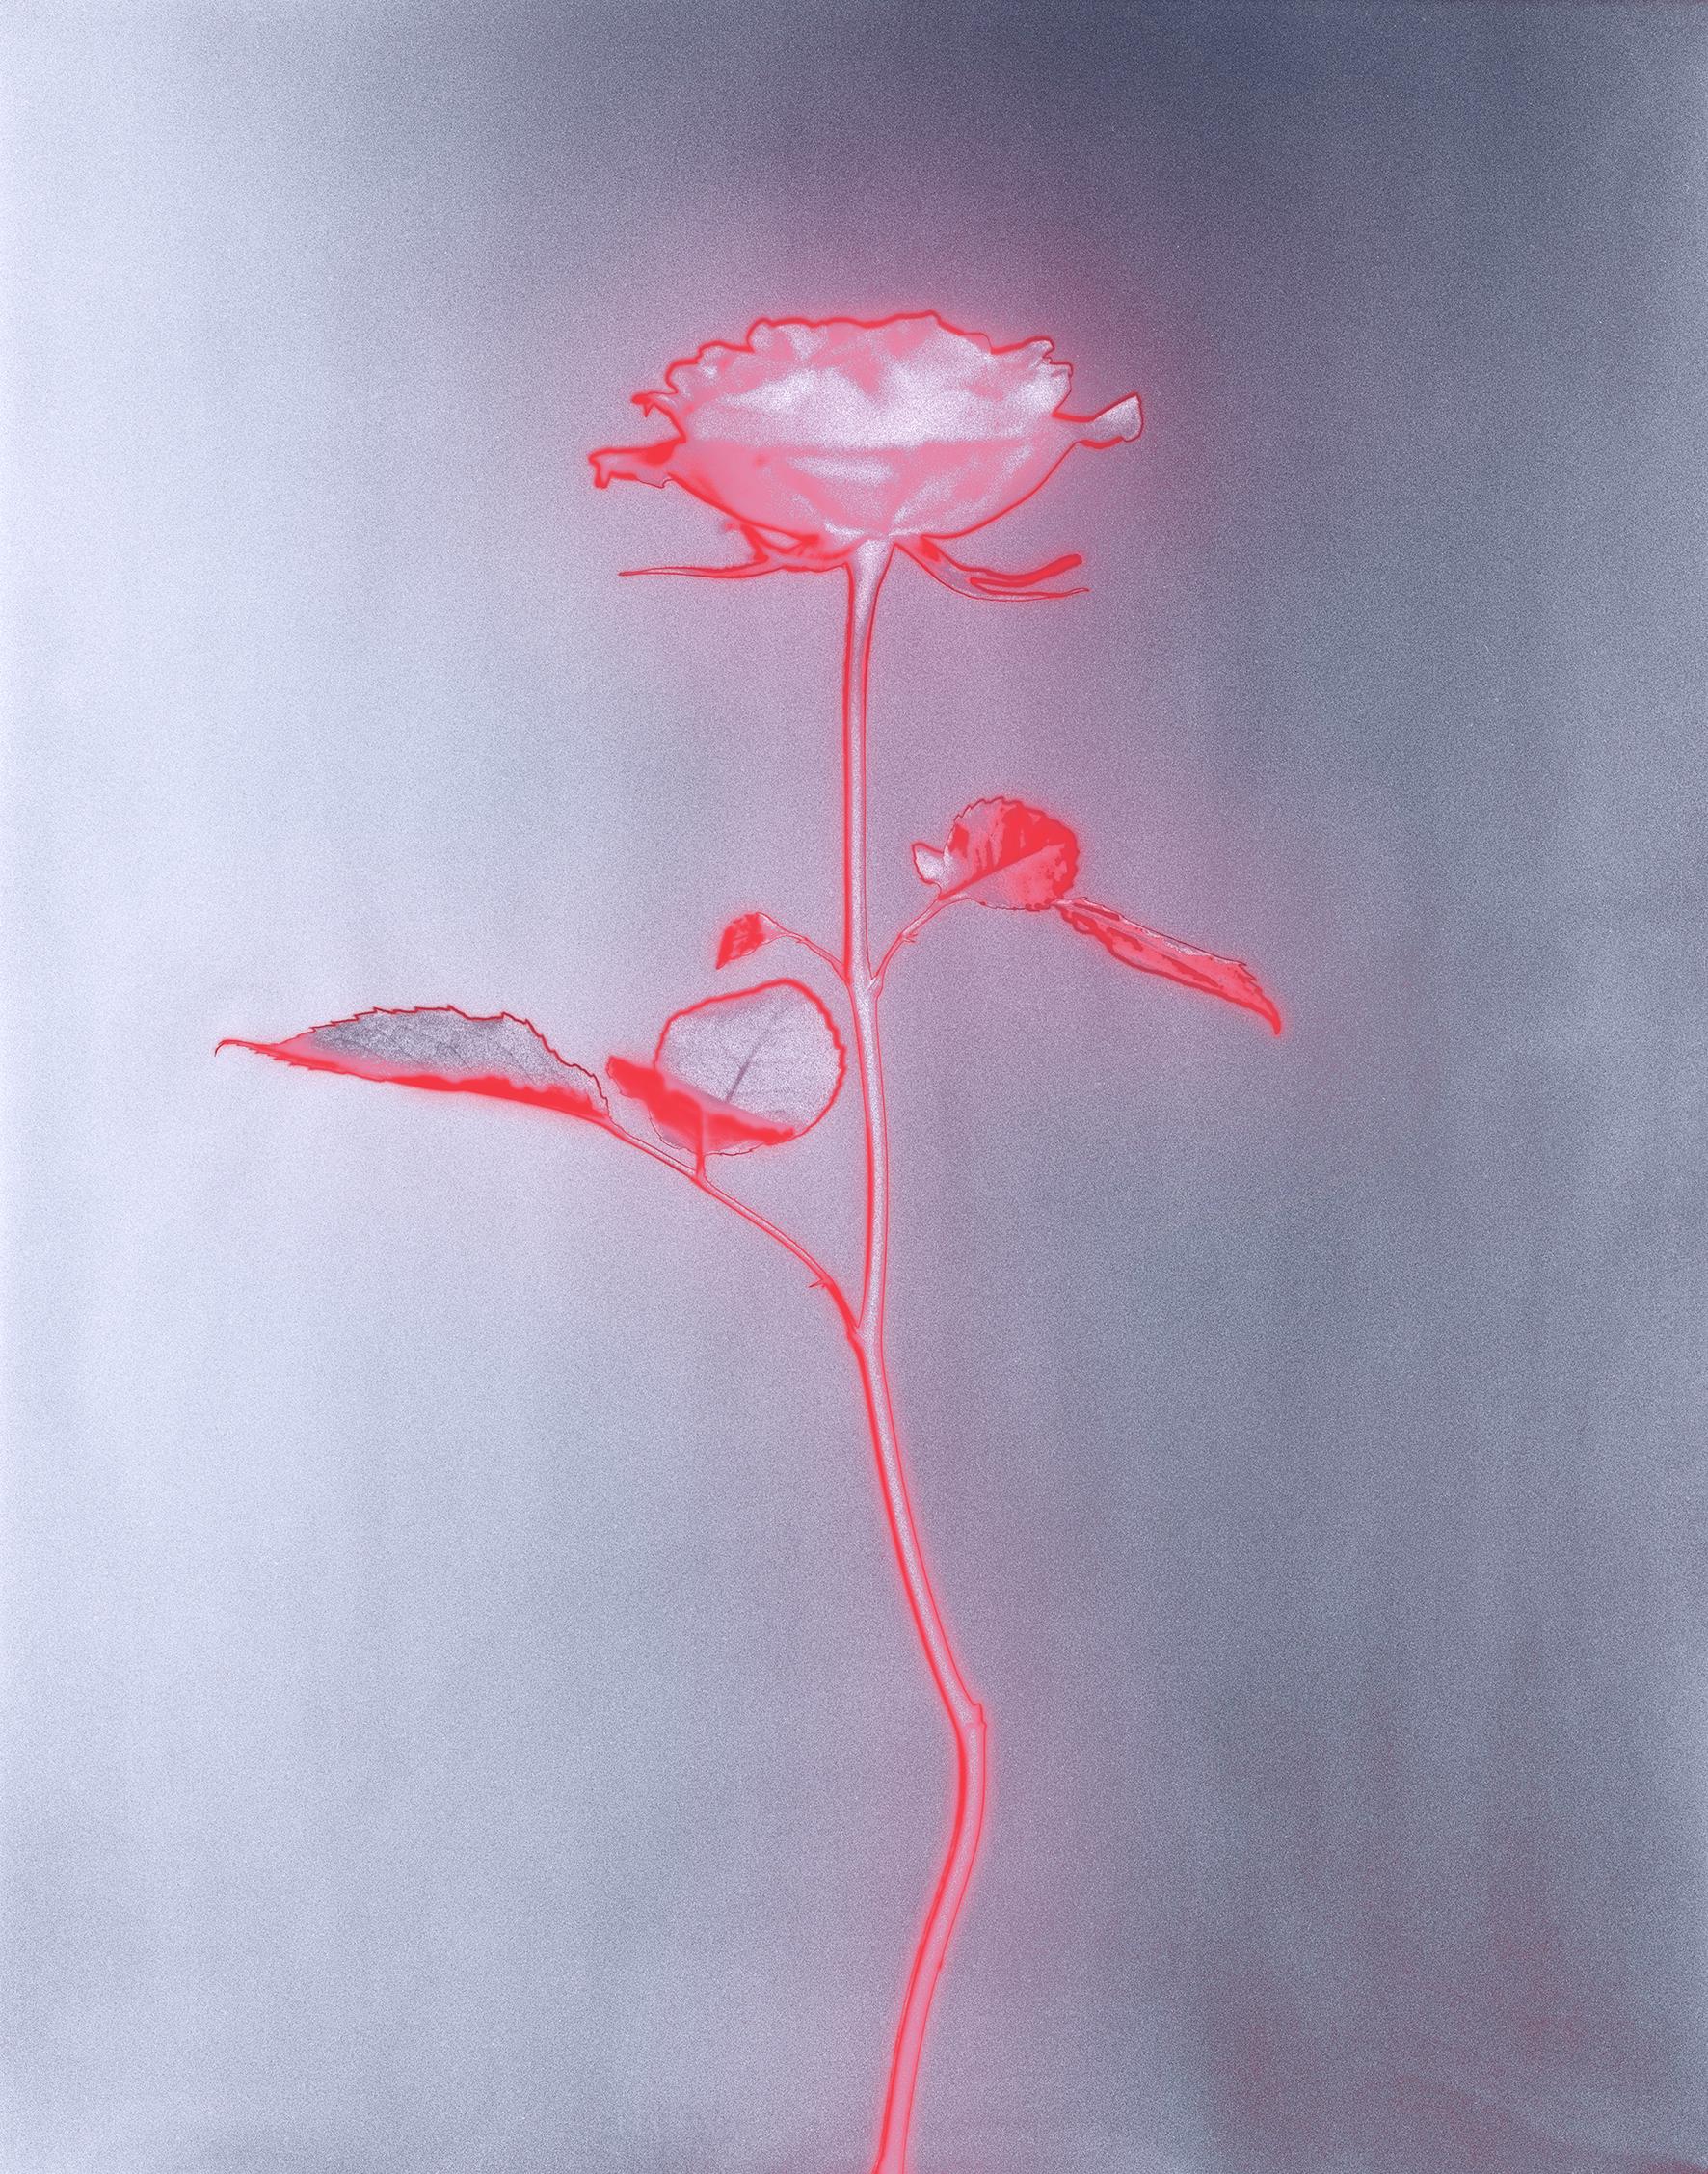 Still-Life Photograph Ugne Pouwell - « Rose glow », photographie analogique de natures mortes, technique mixte contemporaine, rose/rouge